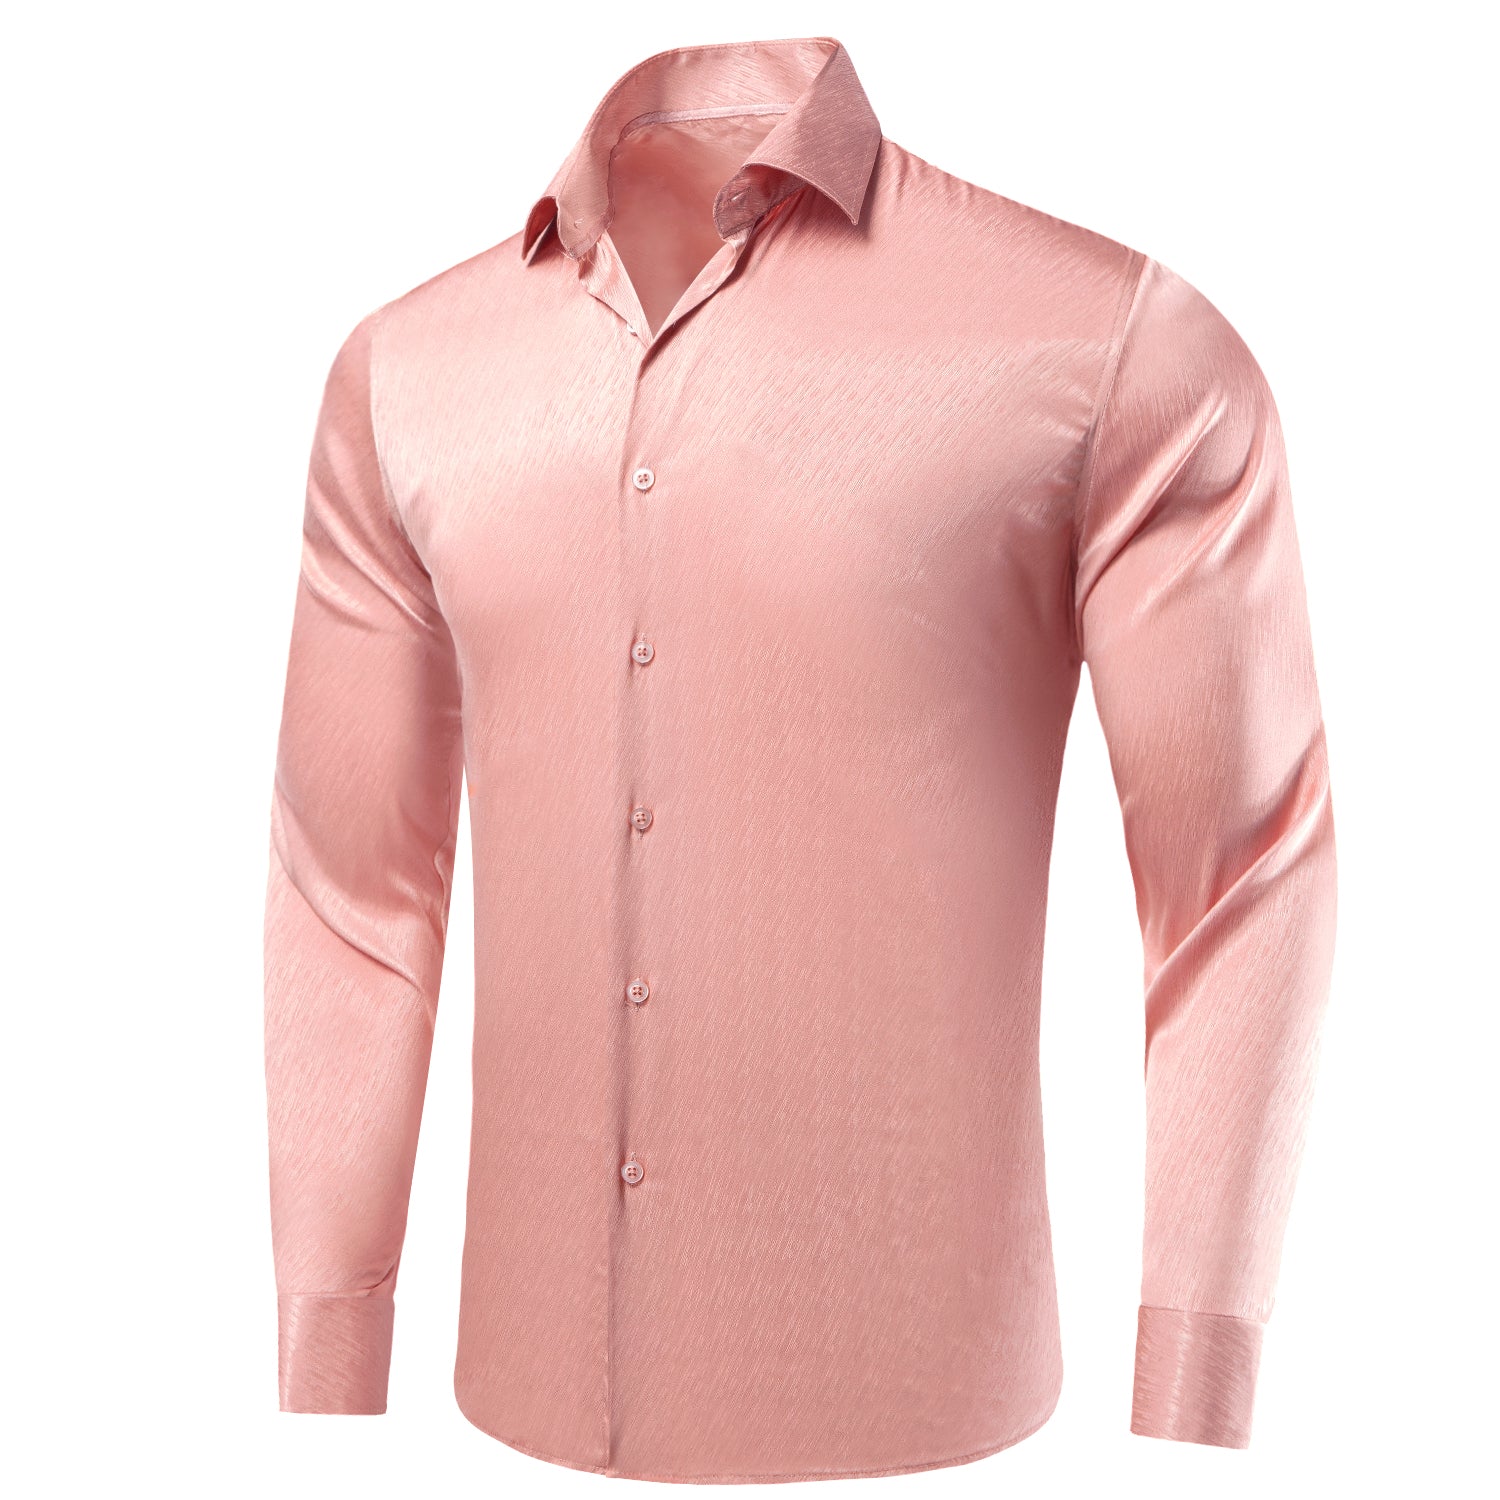 Rose Golden Solid Silk Men's Long Sleeve Shirt